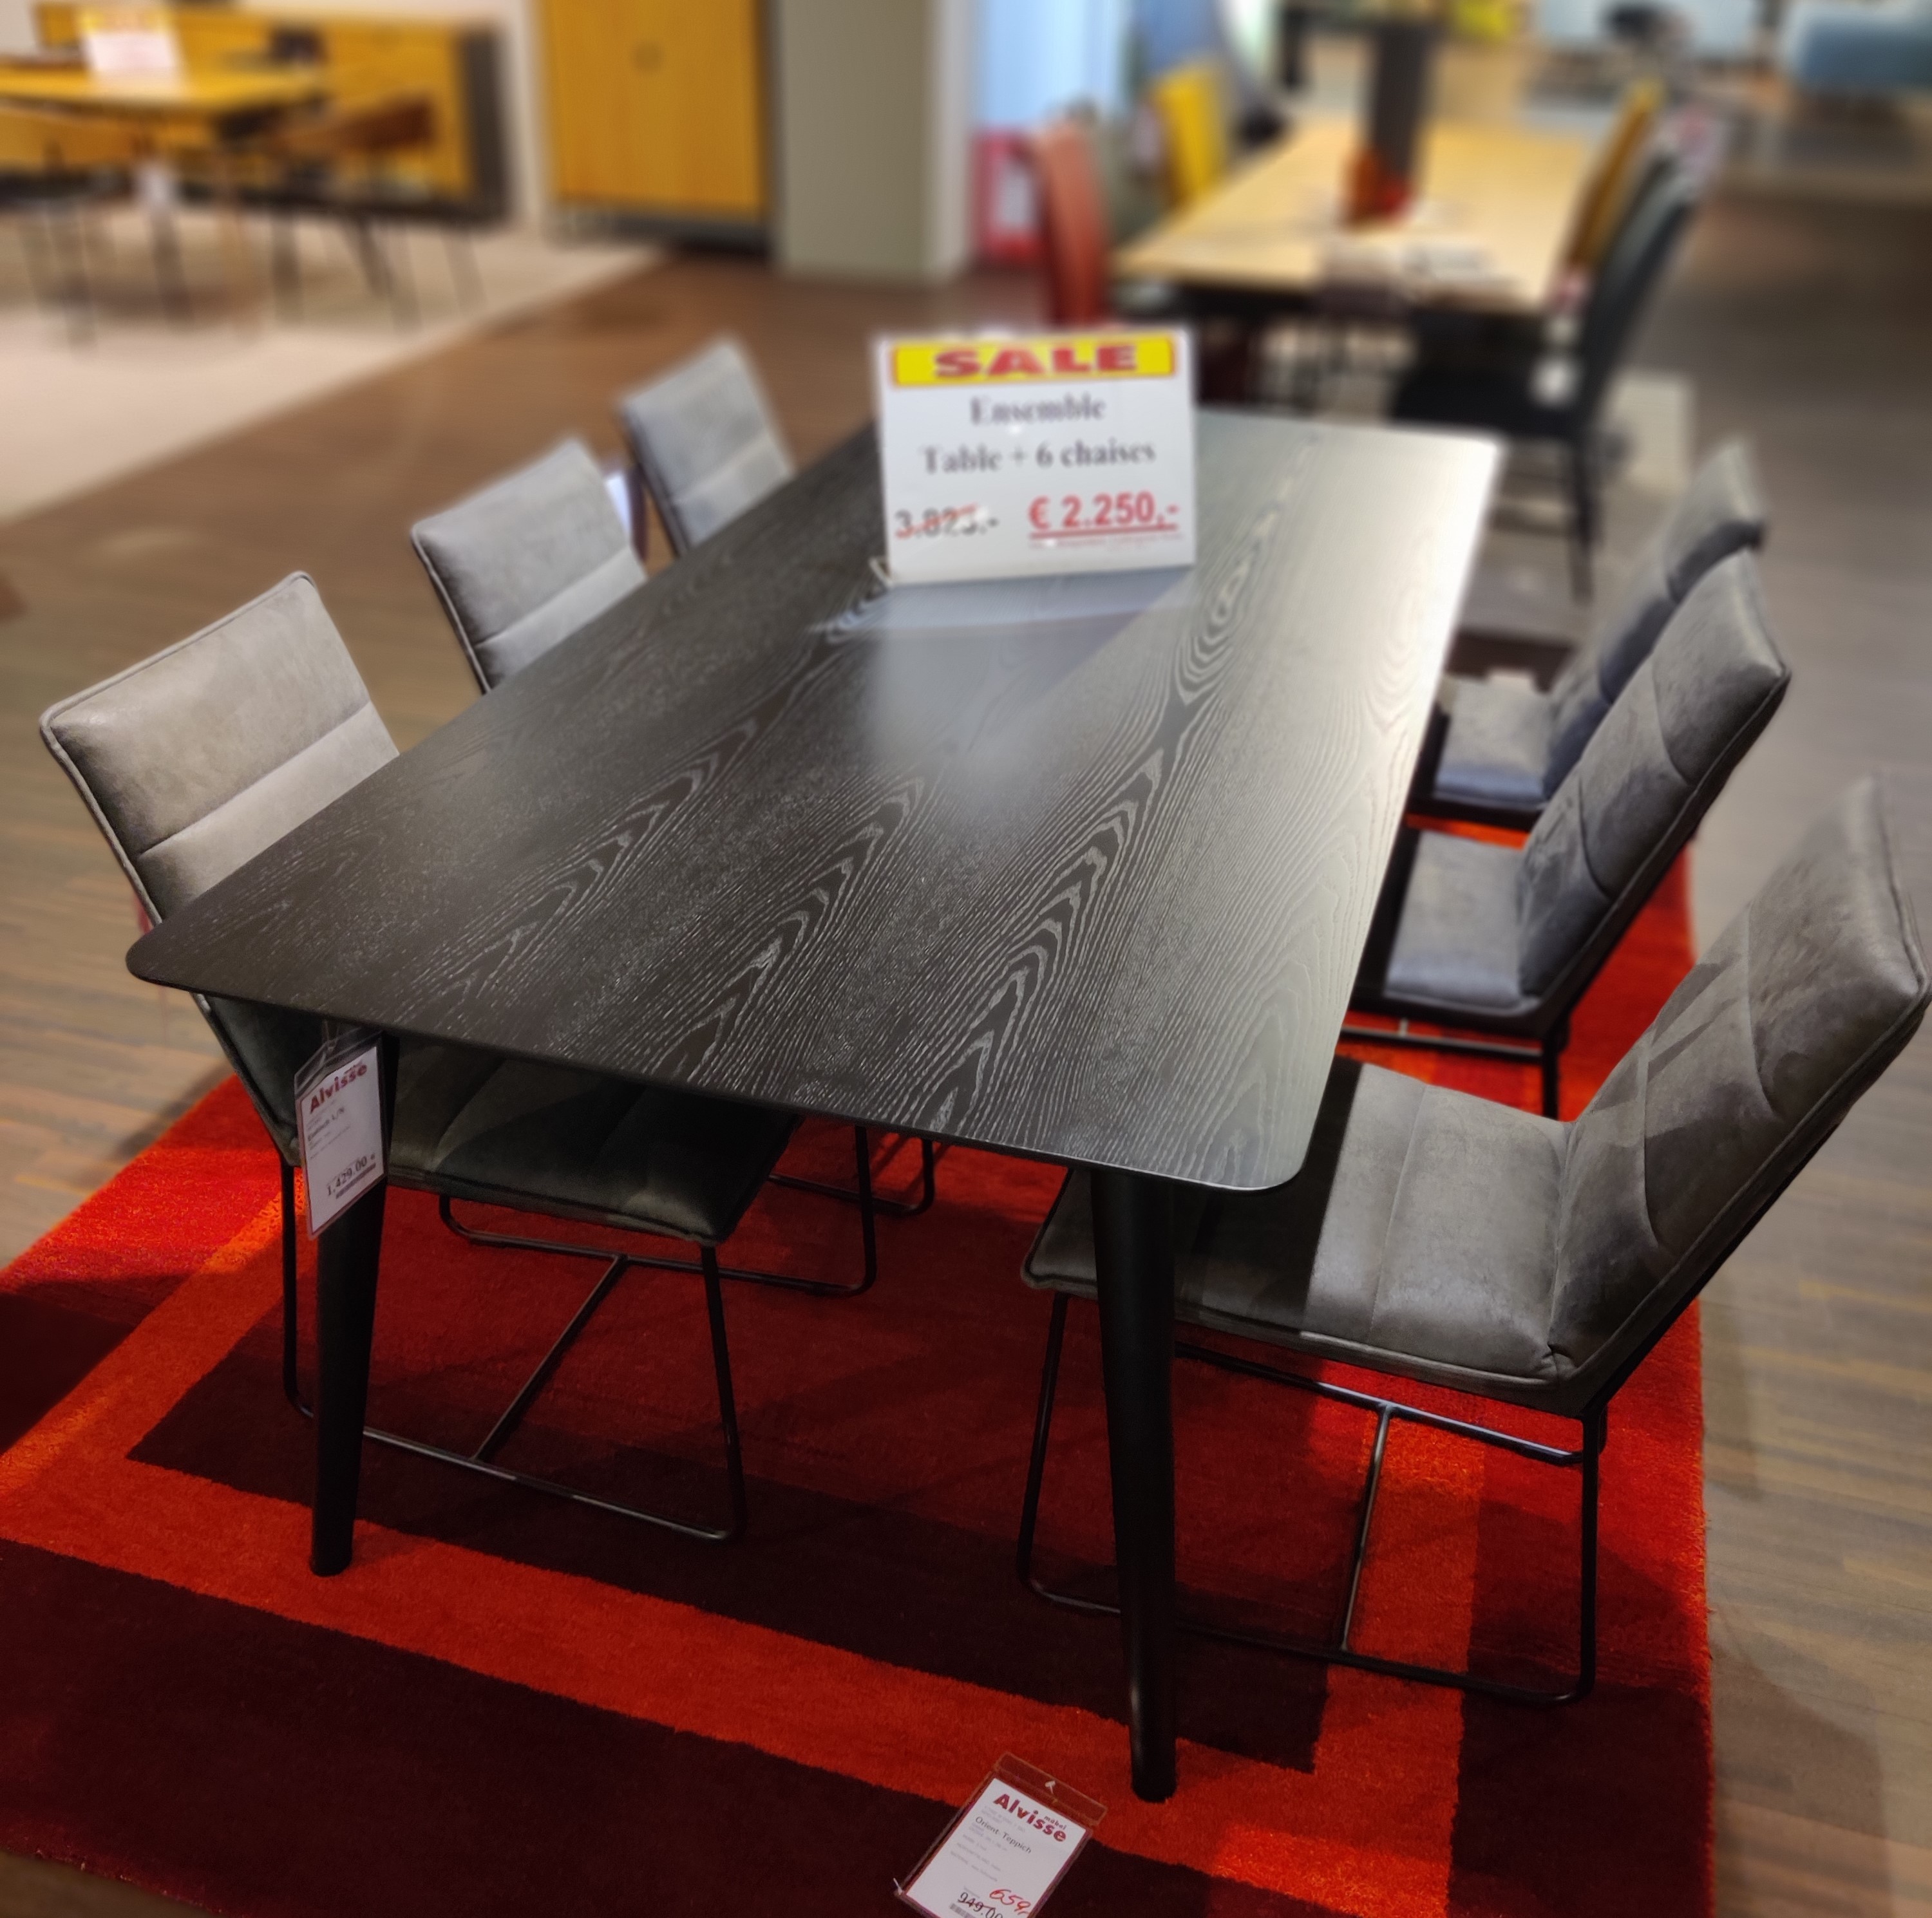 Tisch mit 6 Stühlen  3475.4 + 6 x 5215.63